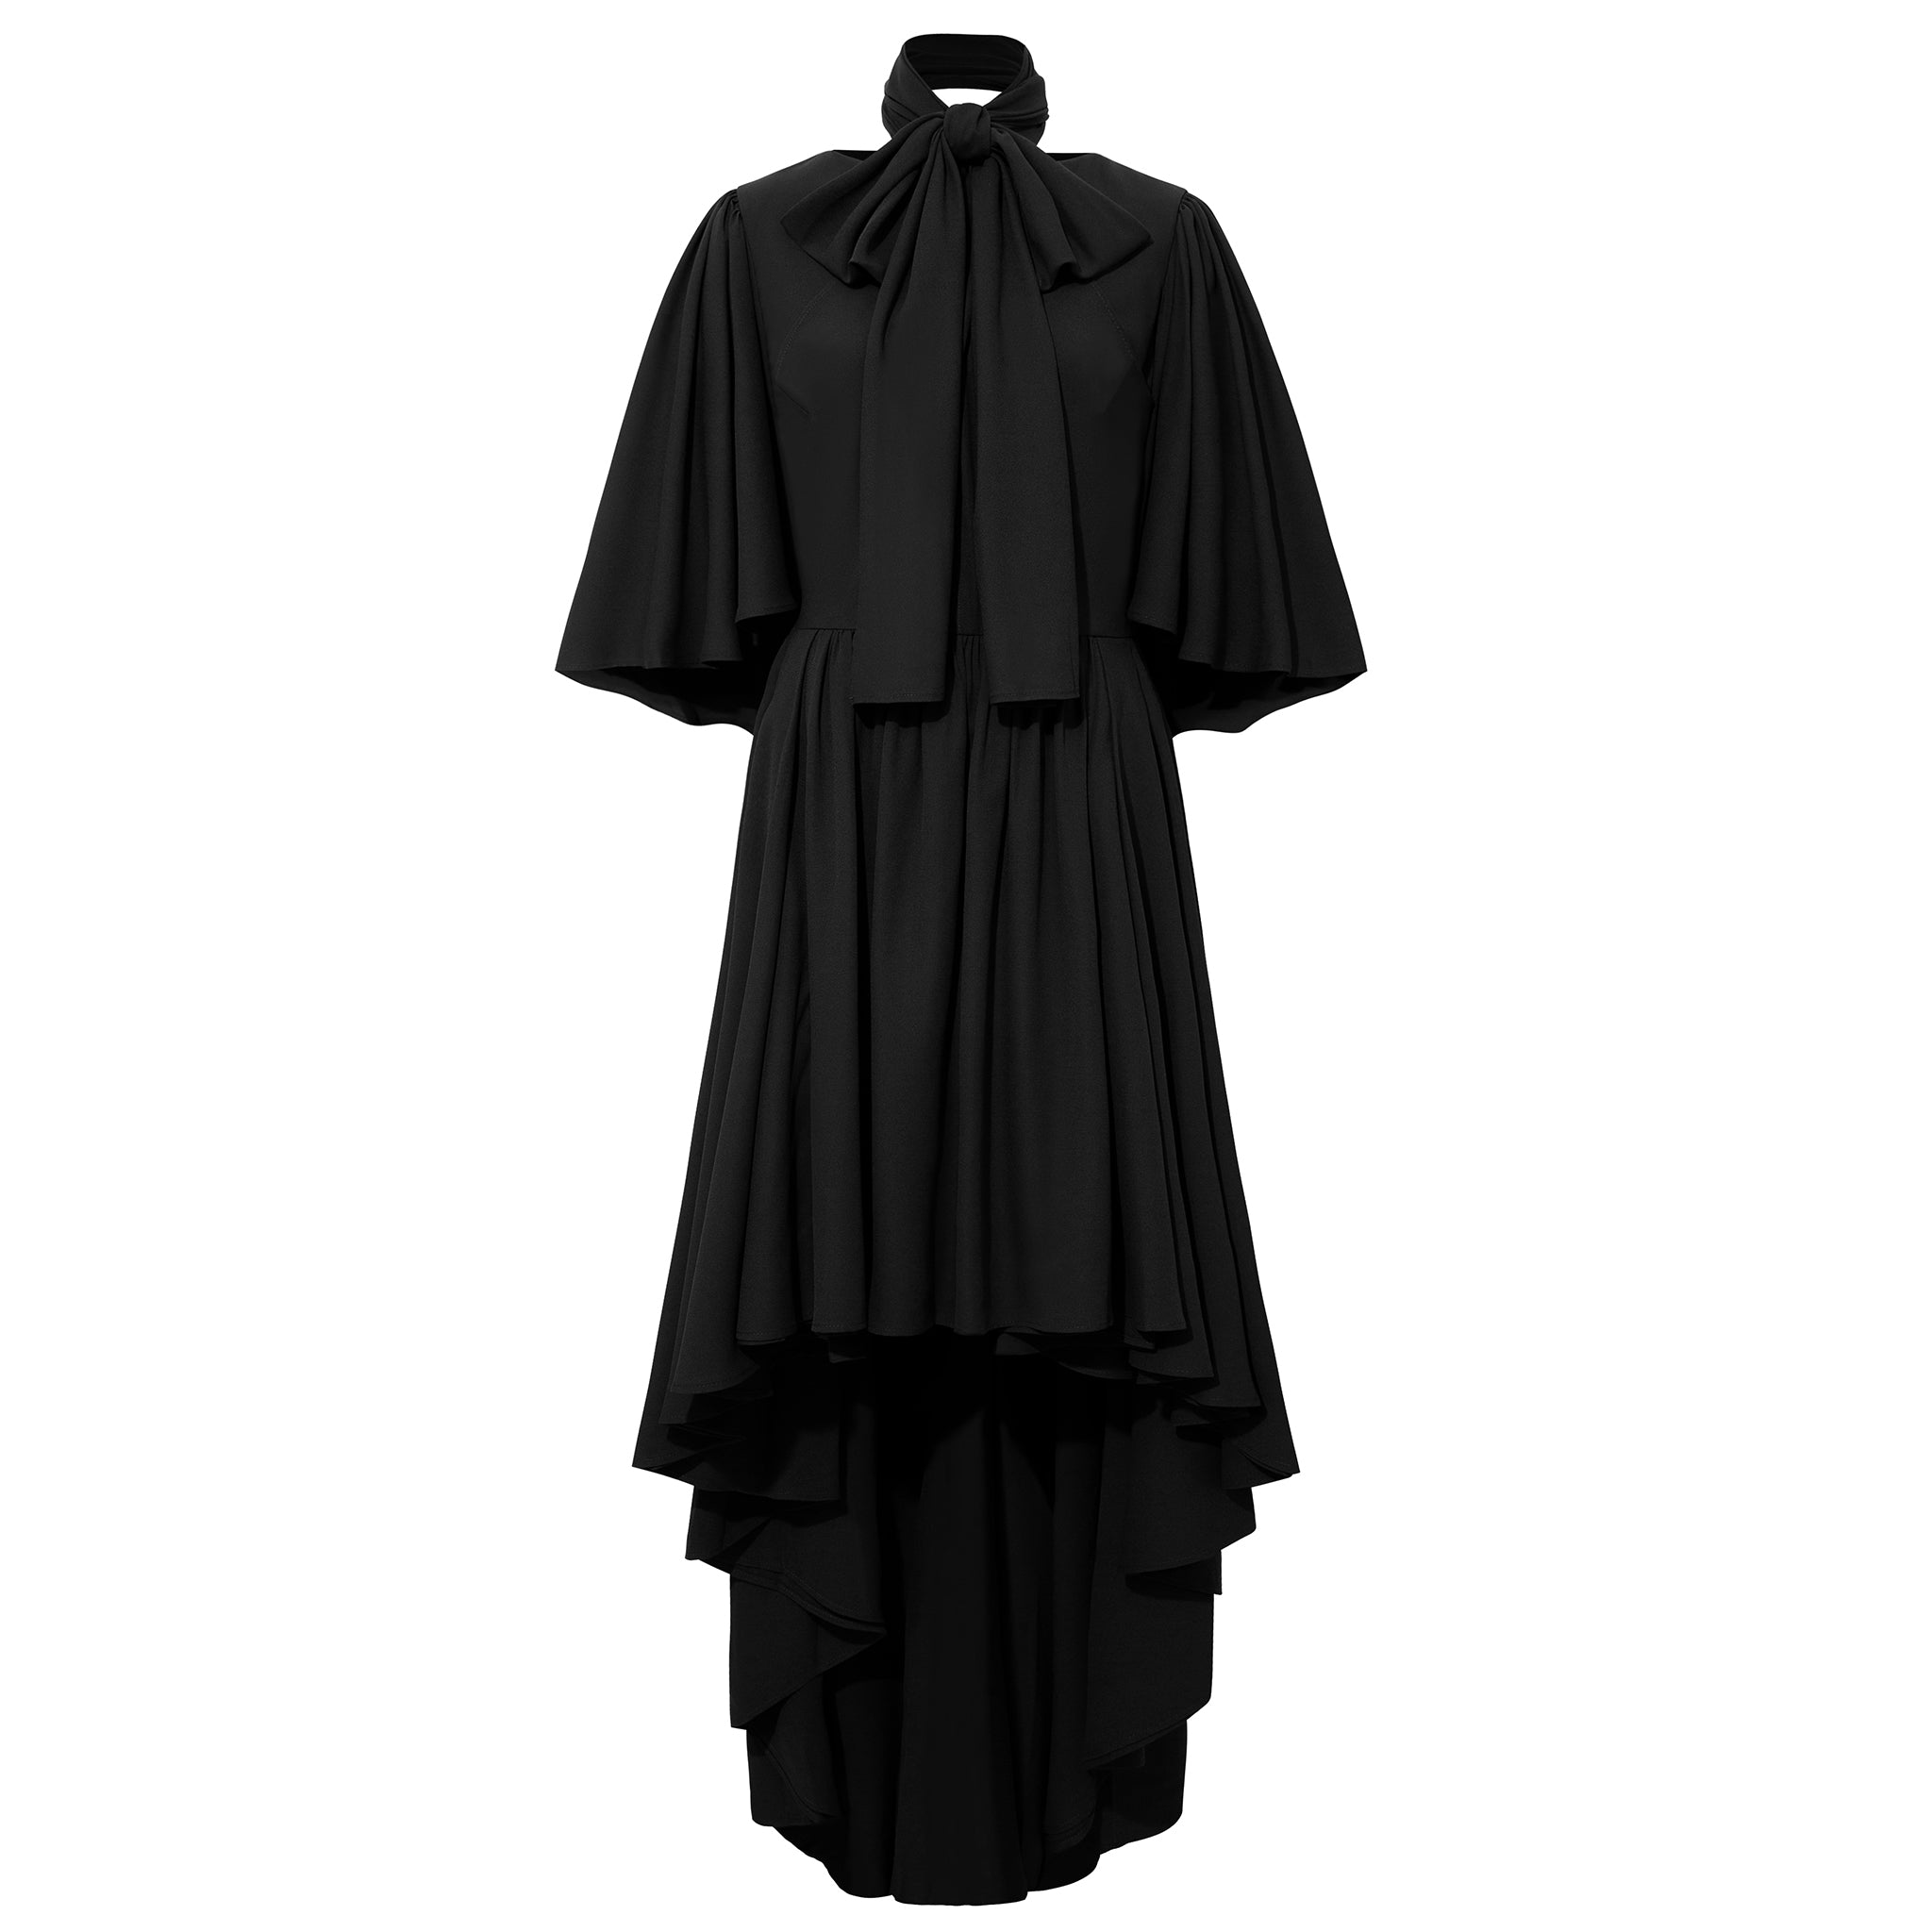 Women’s Bow Tie Neck Cape Sleeve Maxi Dress - Black Small Femponiq